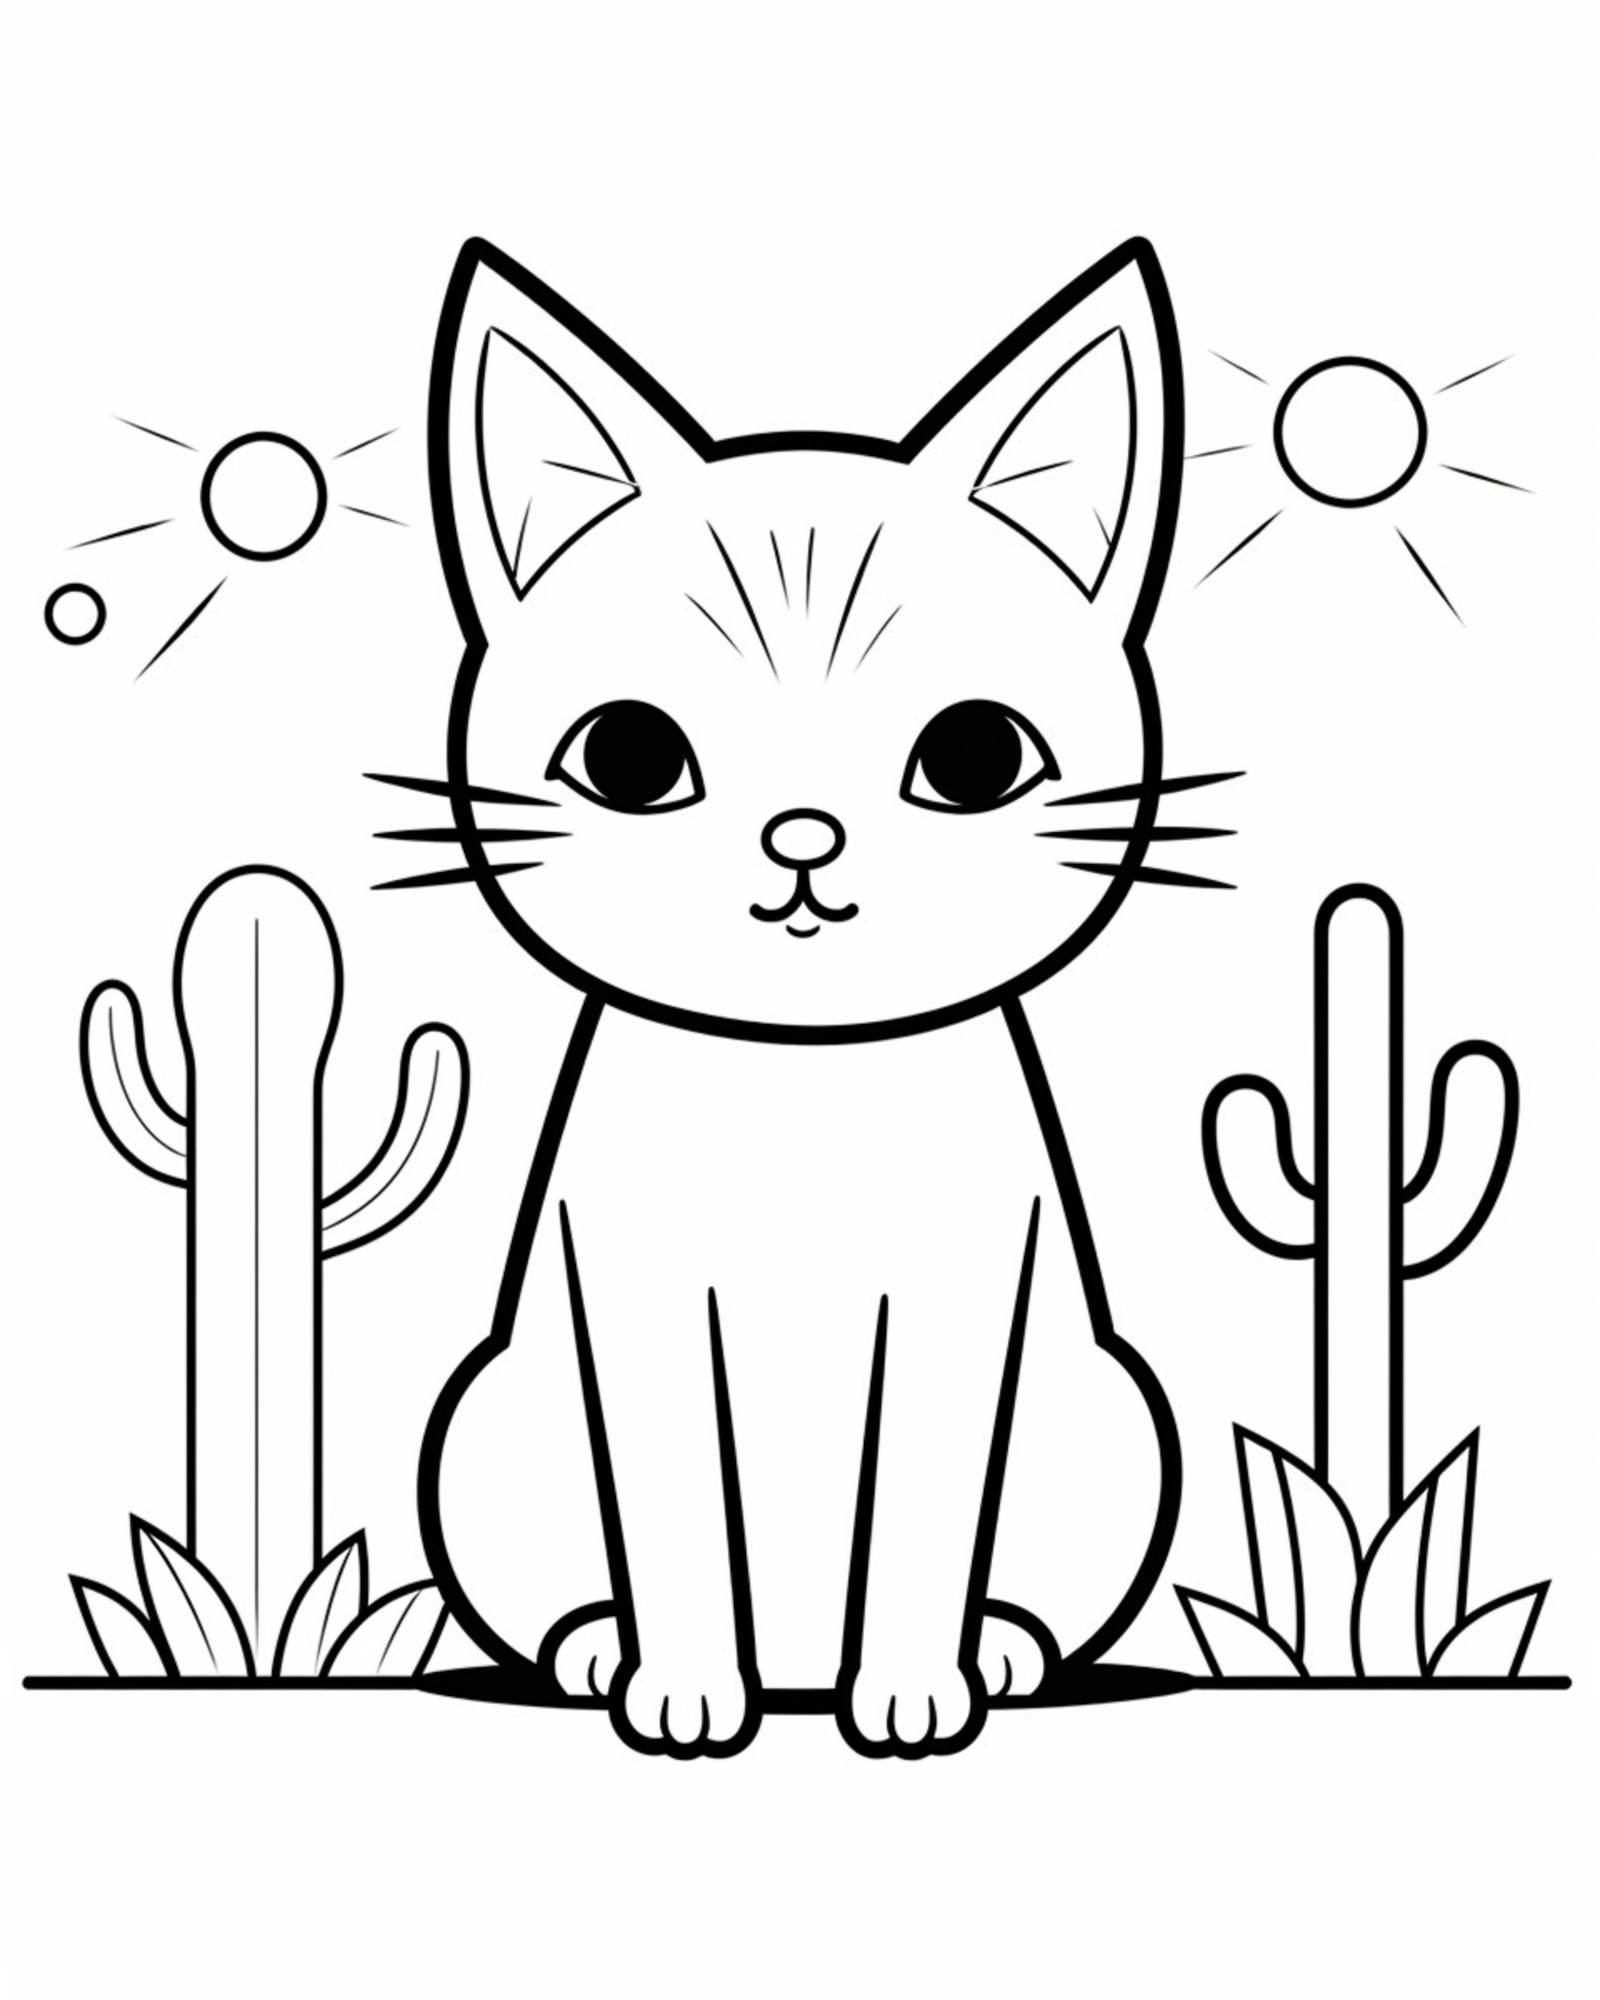 Раскраска для детей: кот в пустыни на фоне кактусов